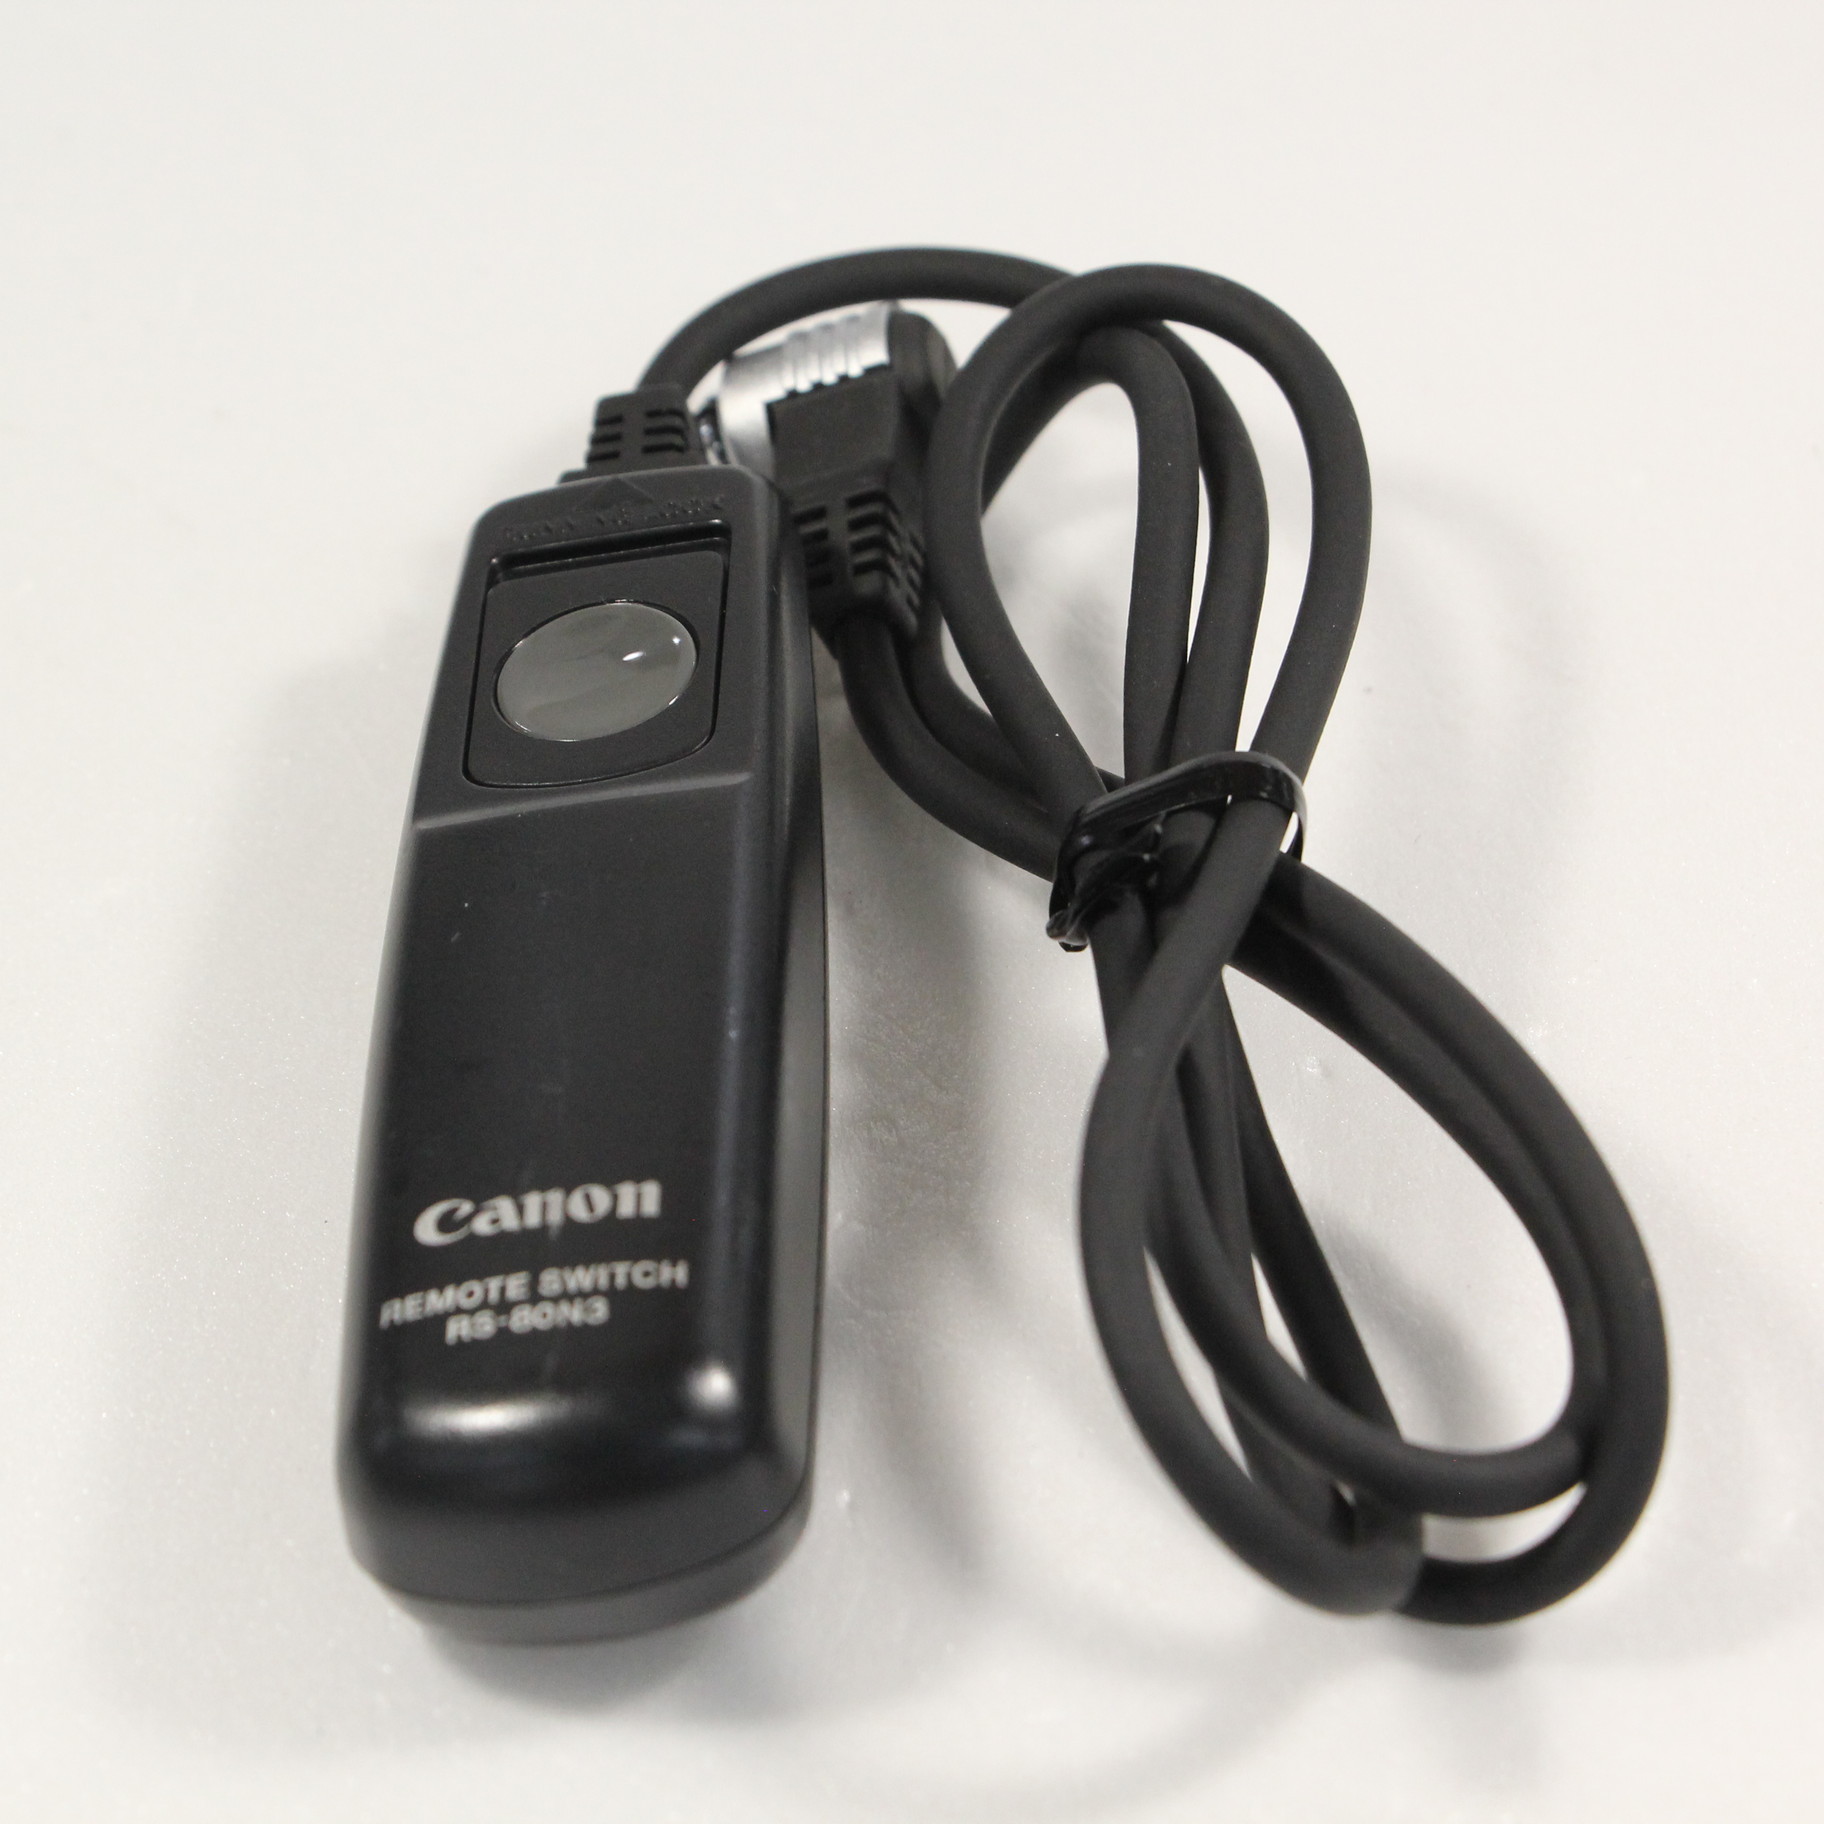 Canon（キヤノン） リモートスイッチ RS-80N3 - カメラアクセサリー